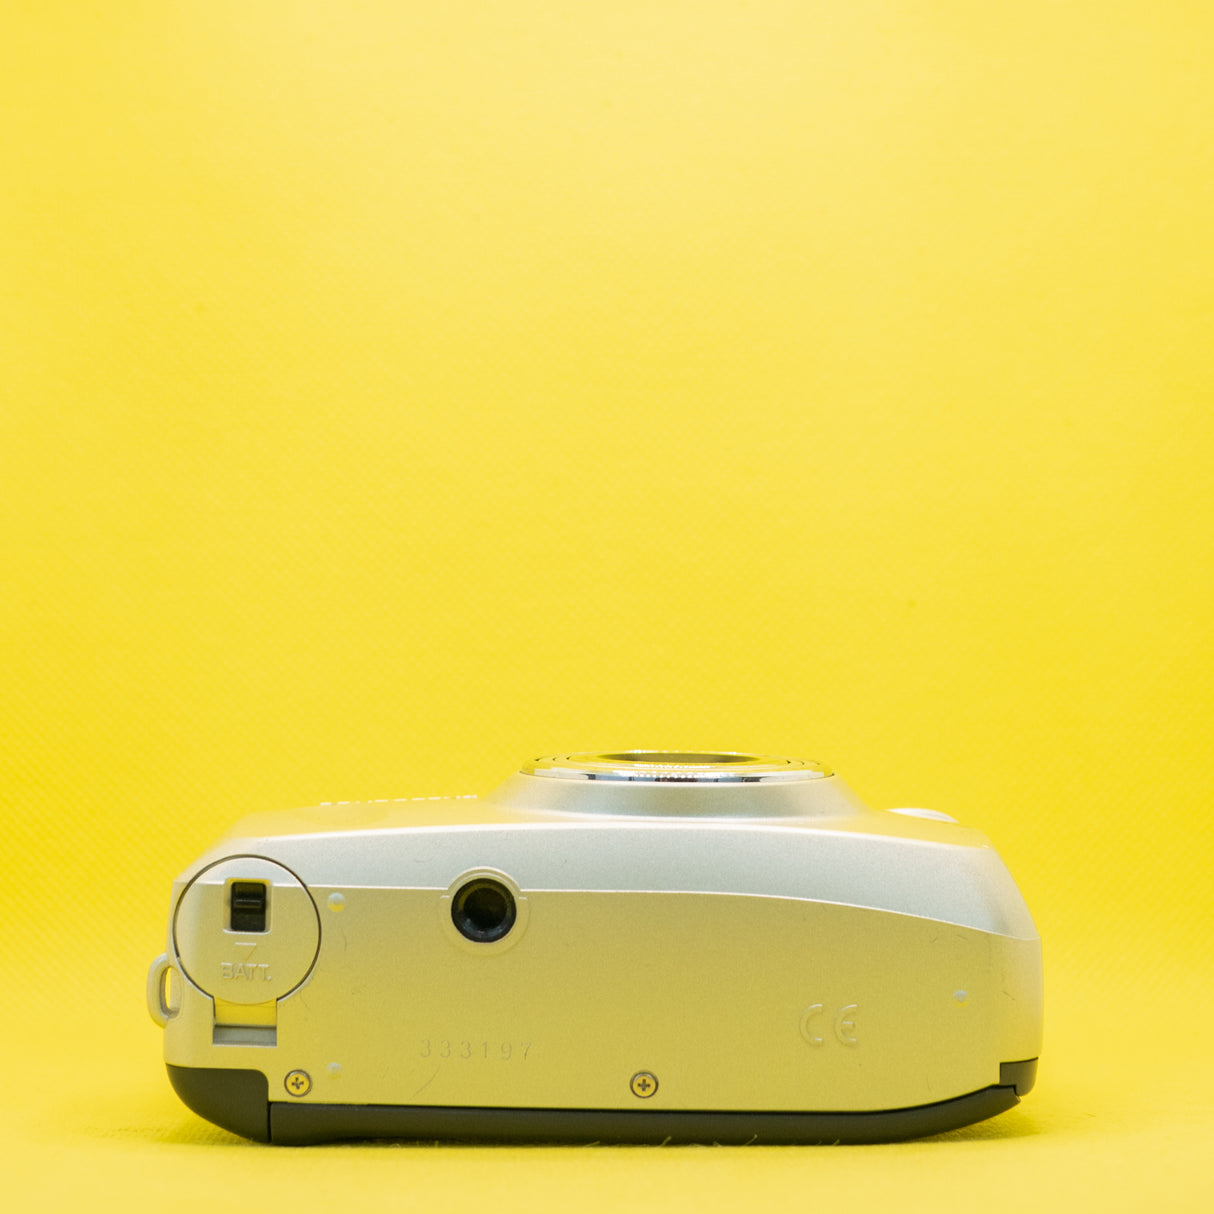 Yashica Zoomate 140 (versione Kyocera Premium) - Fotocamera compatta da 35 mm